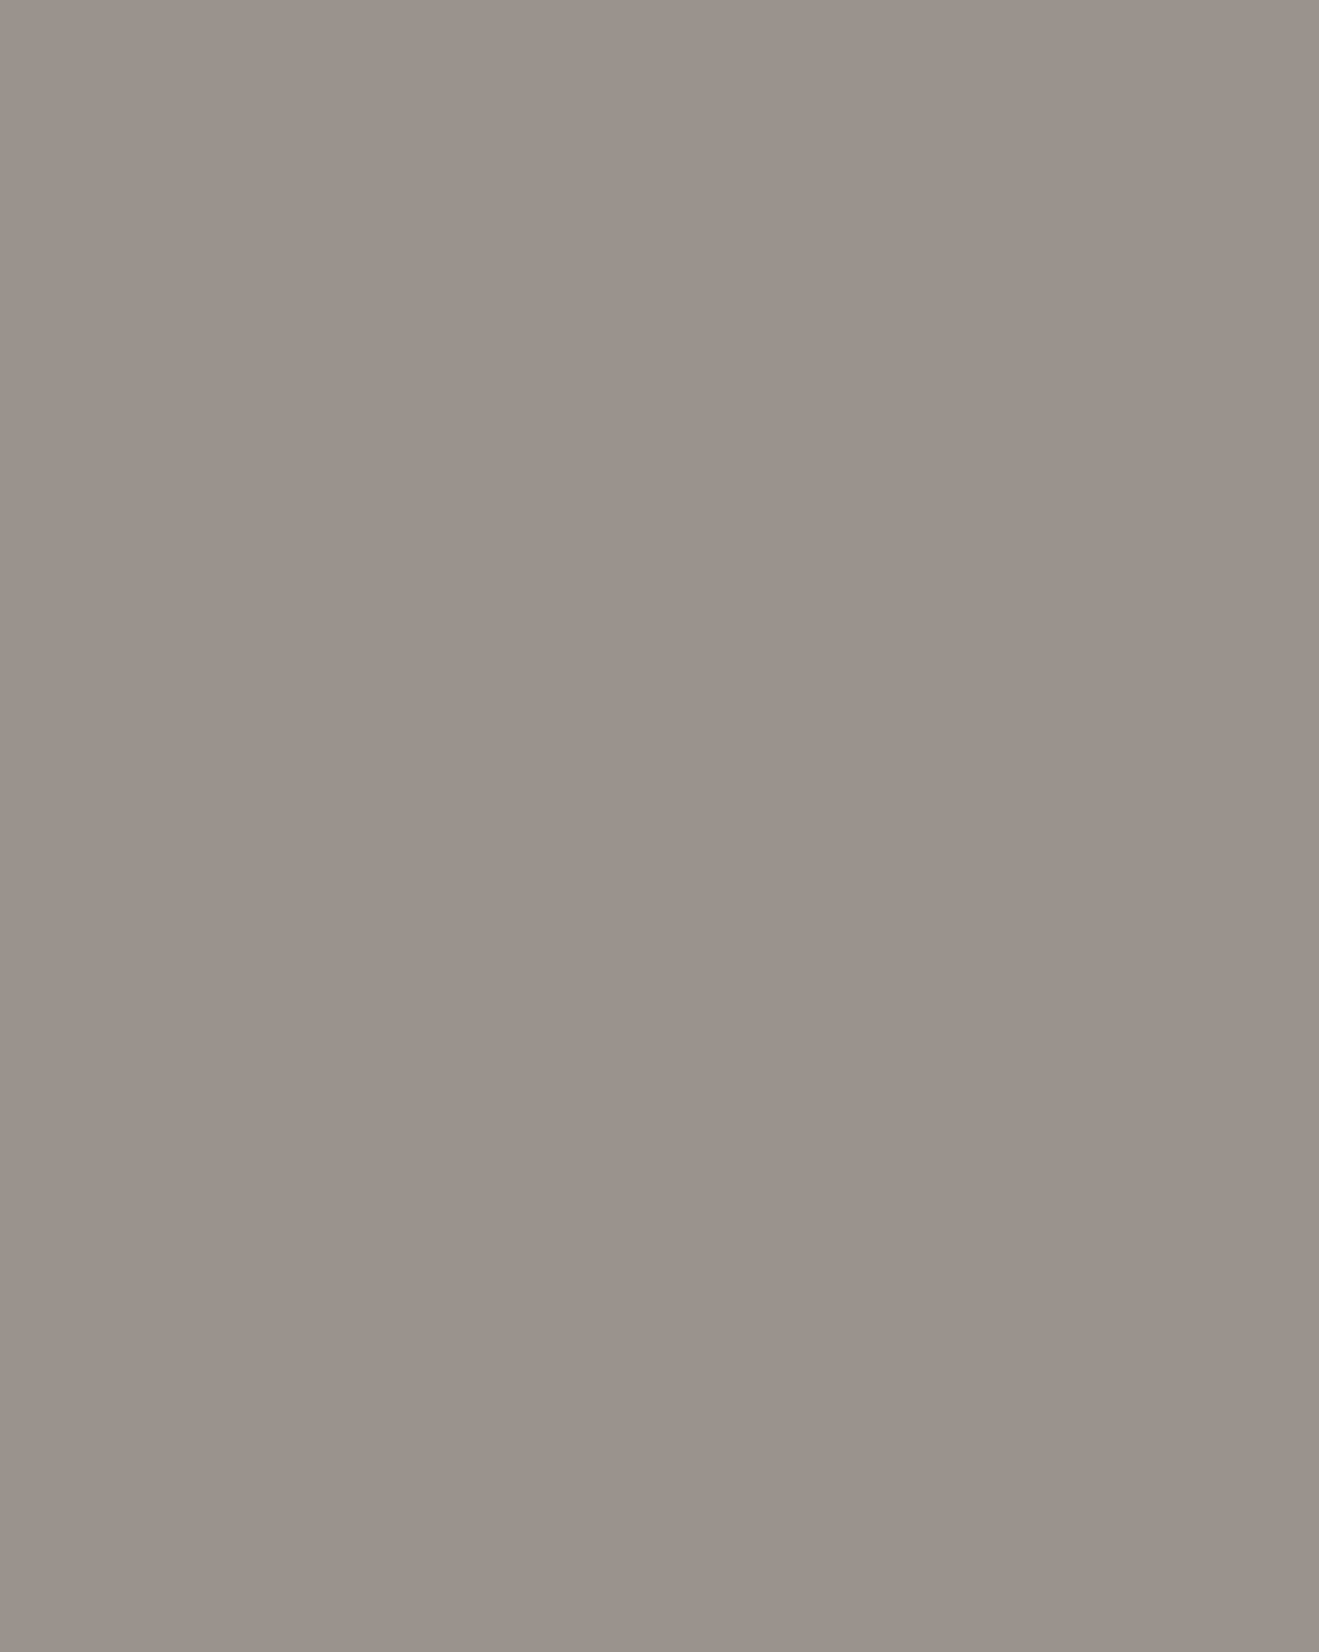 Михаил Врубель. Царевна-лебедь (фрагмент). 1900. Государственная Третьяковская галерея, Москва